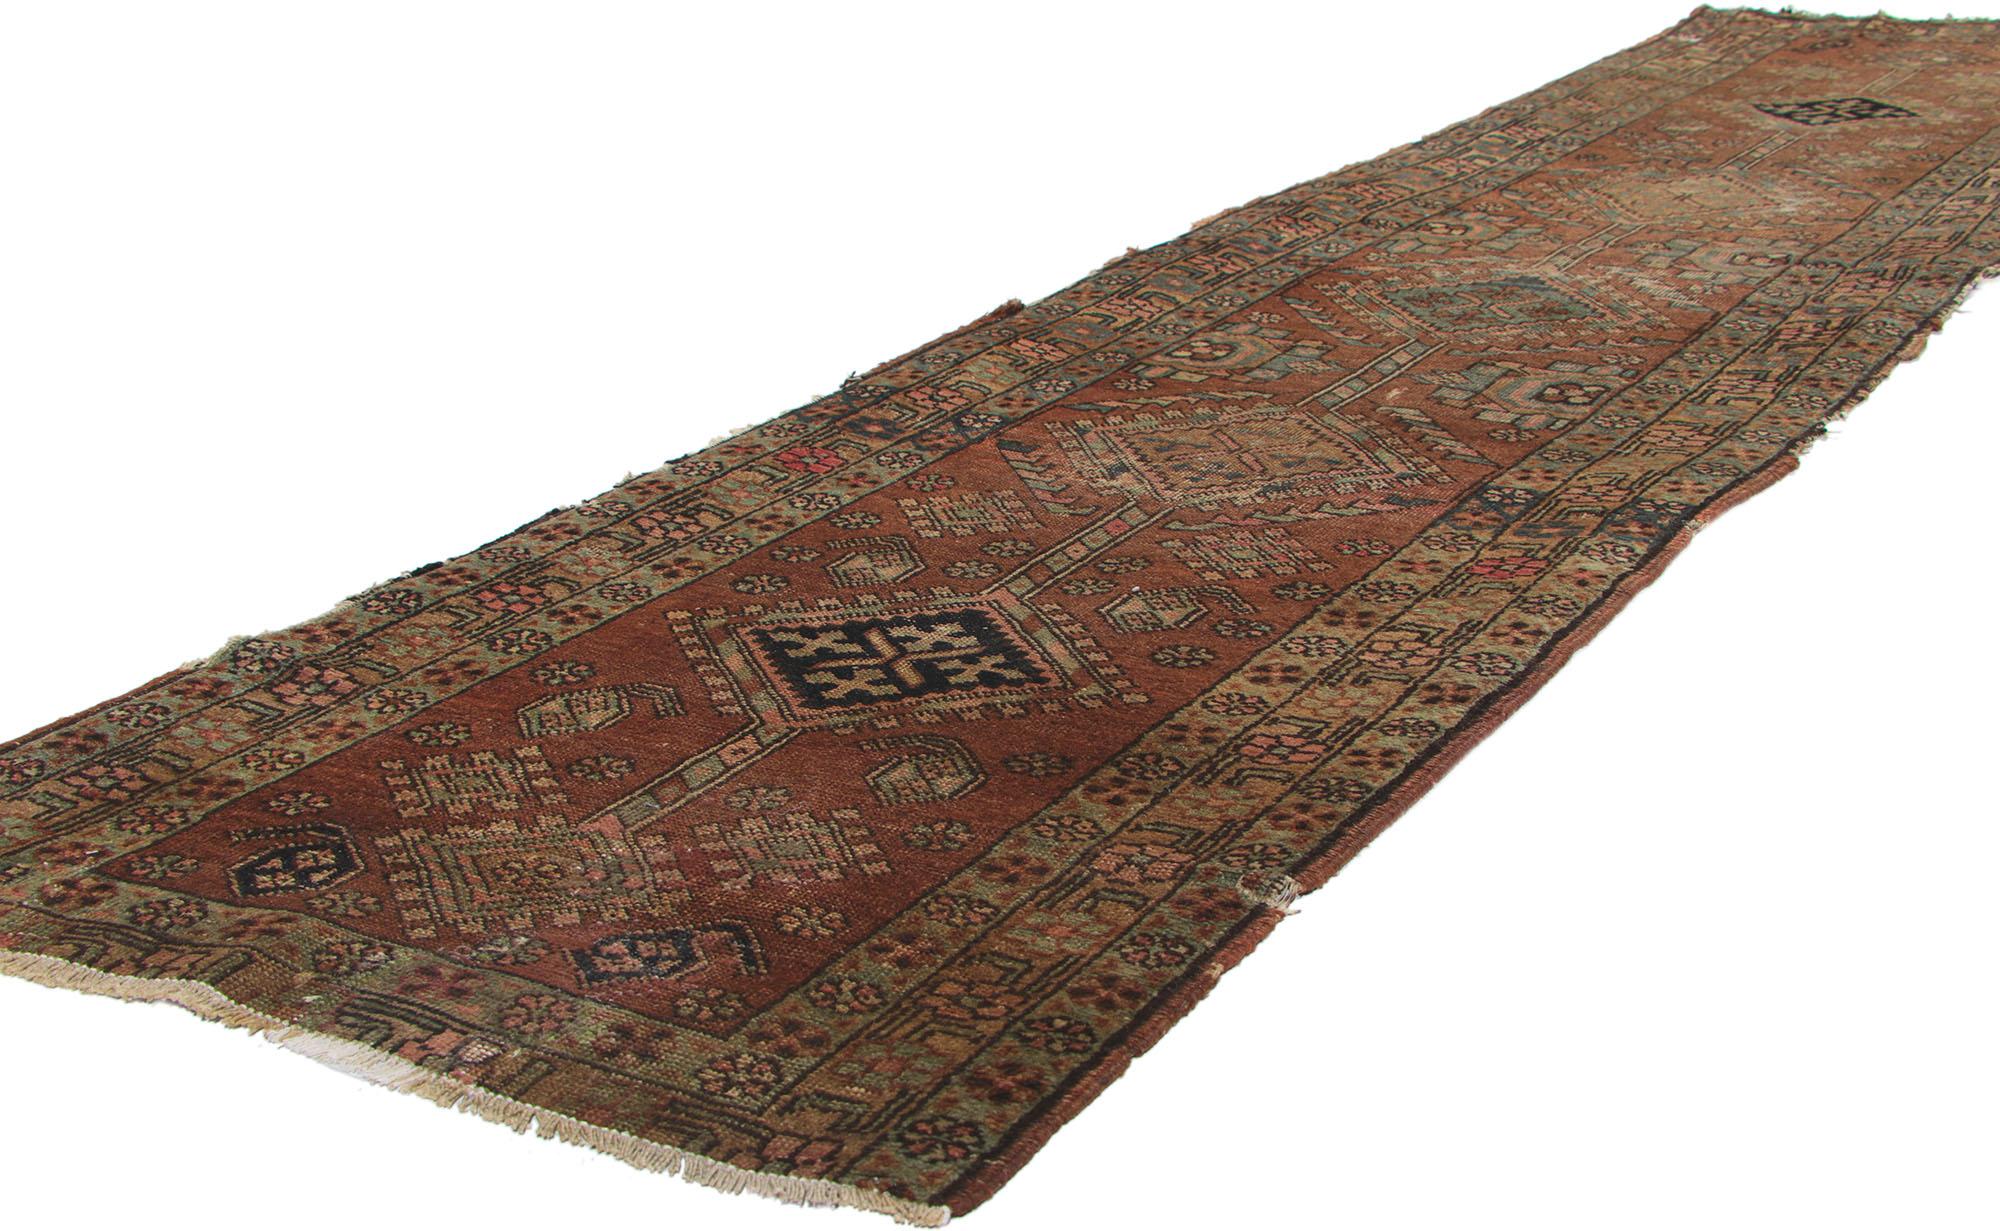 73166 Distressed Antique Persian Heriz Rug Runner, 02'04 x 10'00. Les chemins de tapis persans Heriz usés à l'ancienne constituent une catégorie unique dans le domaine des tapis Heriz, se distinguant par leur aspect vieilli et altéré par le temps.